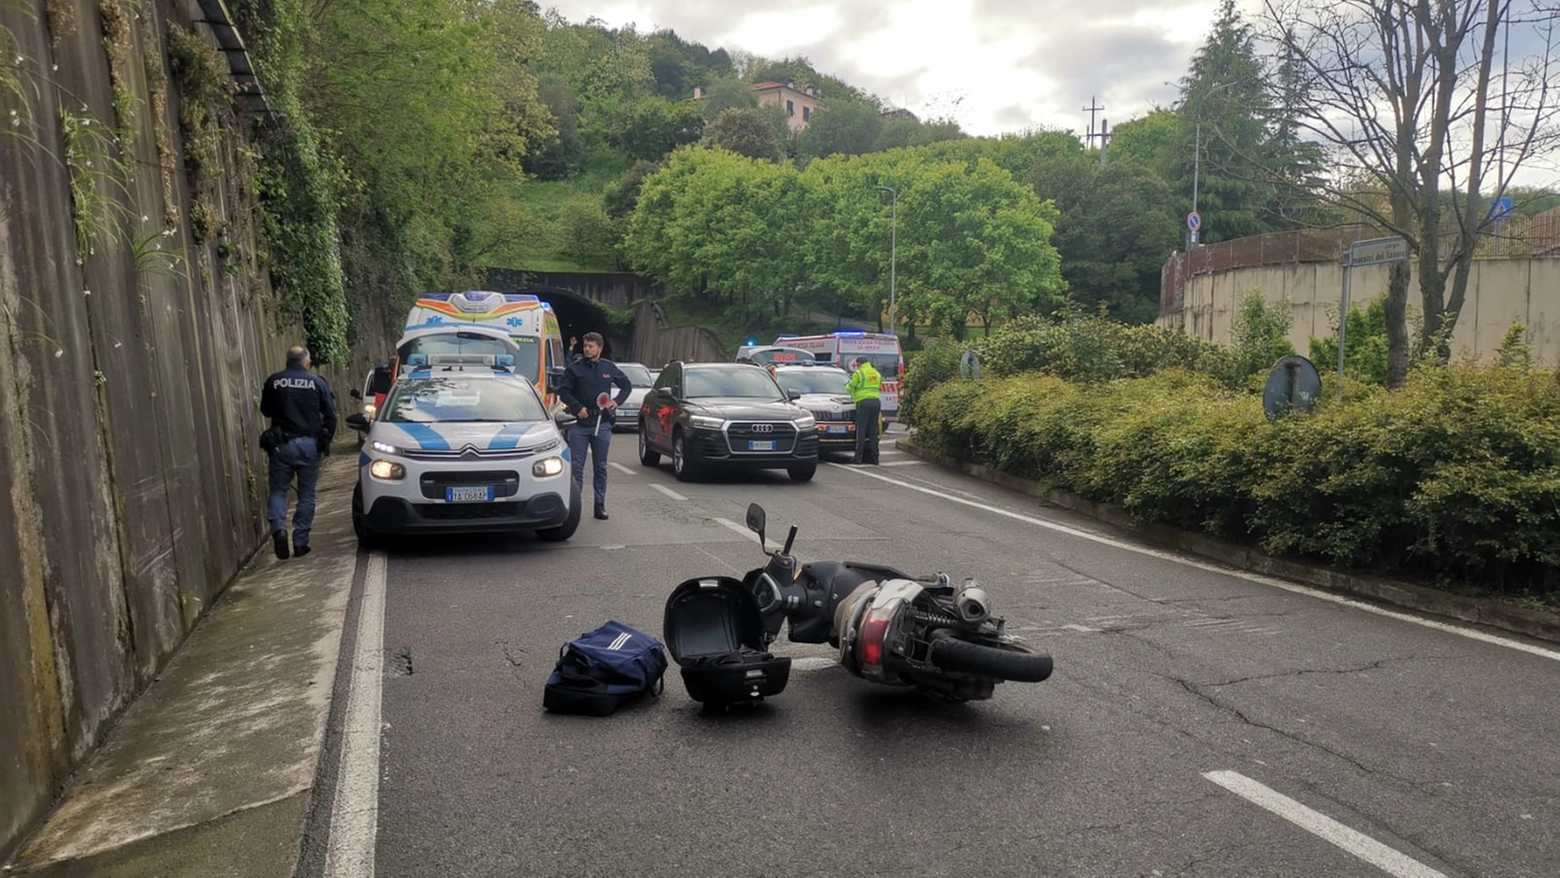 Agenti investiti da uno scooter, il luogo dell'incidente